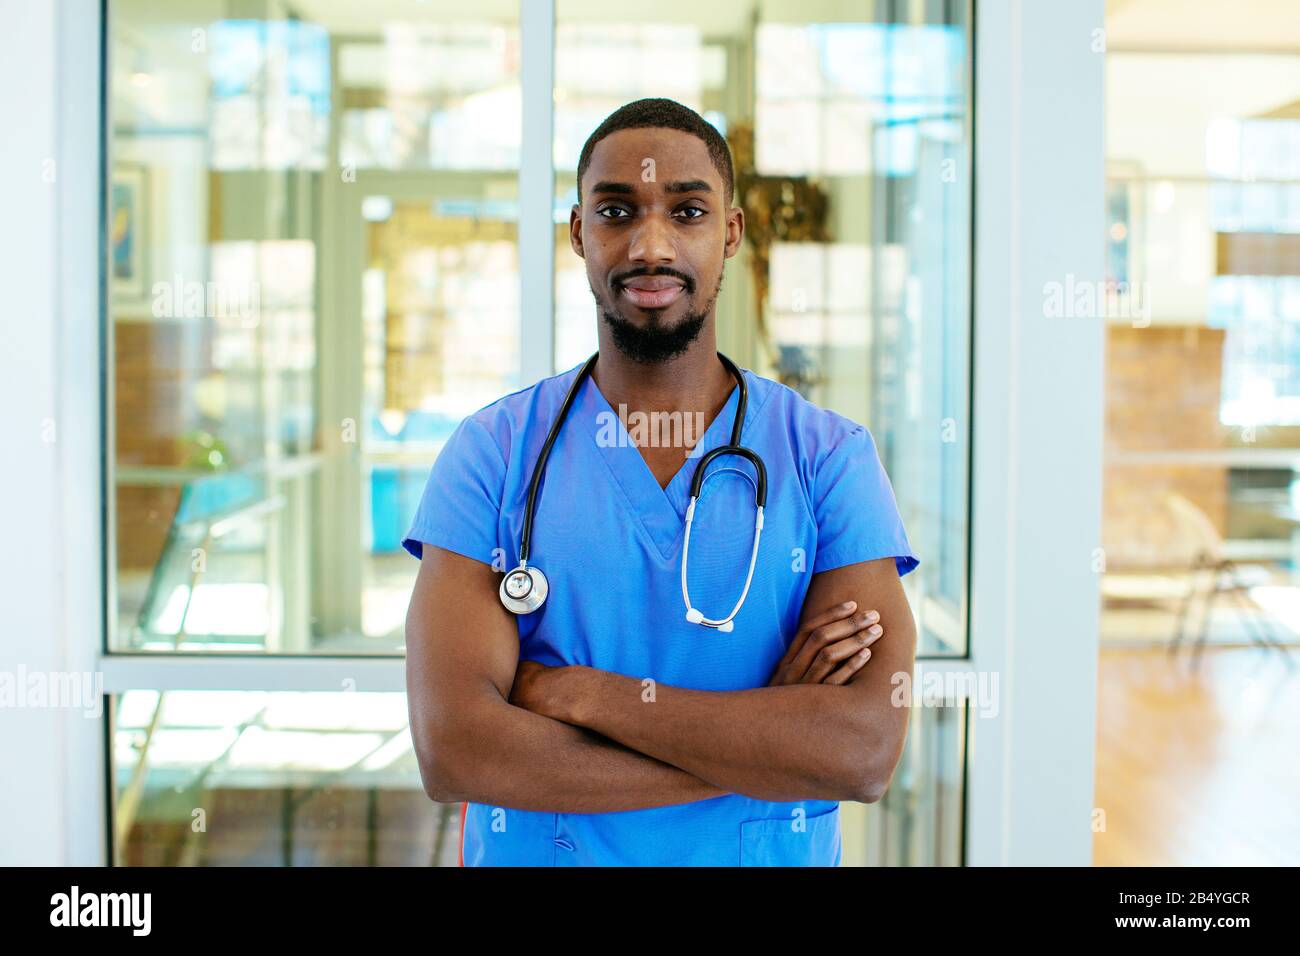 Retrato de un médico o enfermero varón joven que lleva uniforme de exfoliación azul y estetoscopio, con los brazos cruzados en el hospital Foto de stock